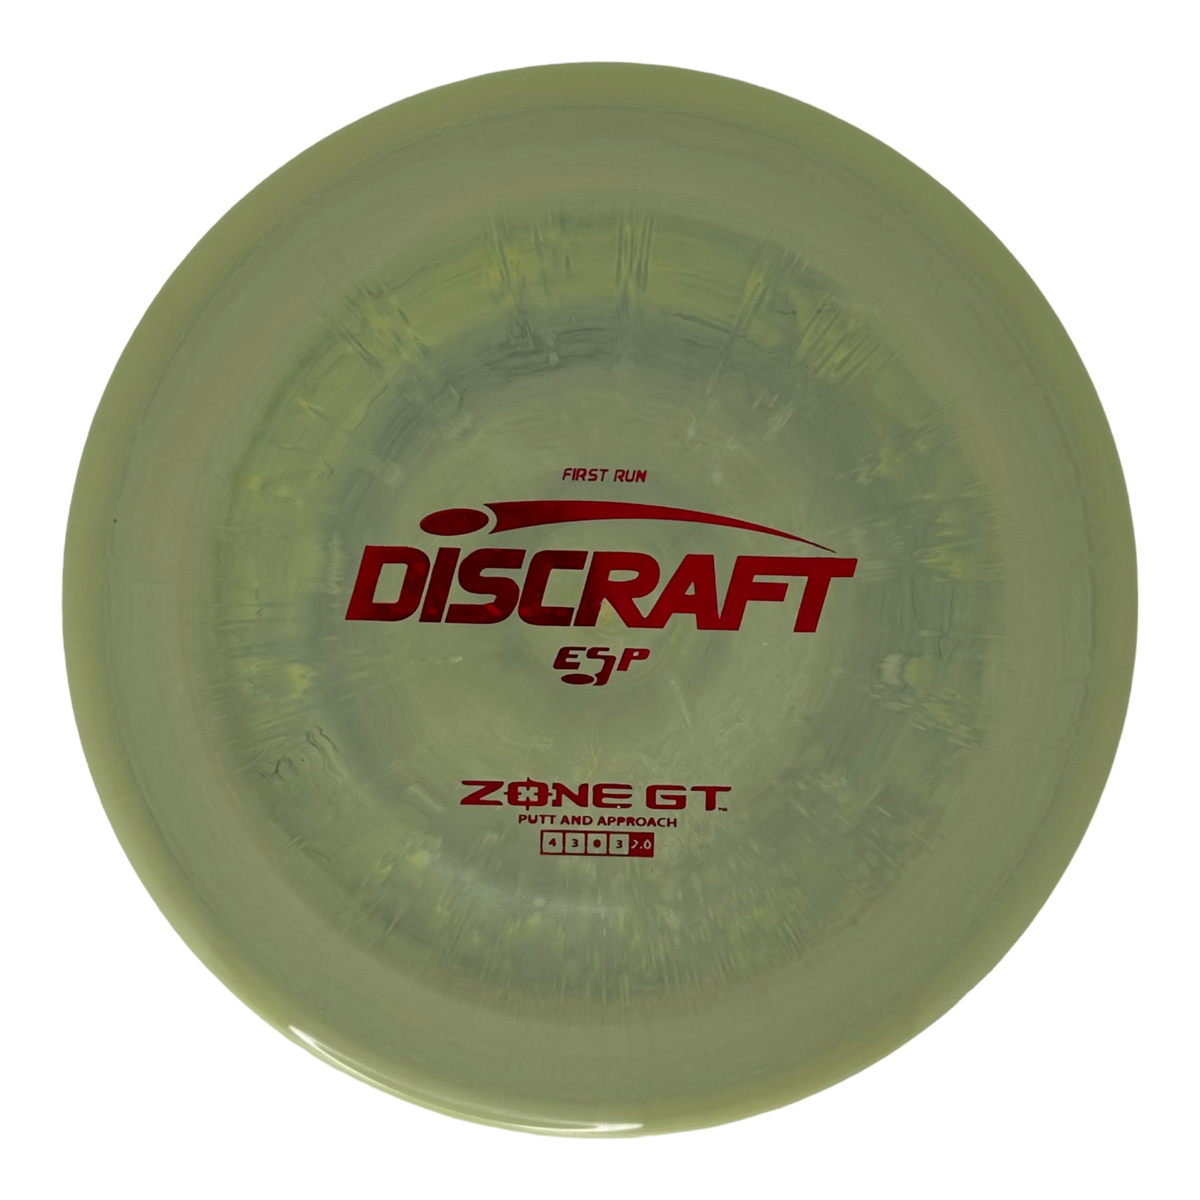 Discraft ESP Zone GT - First Run